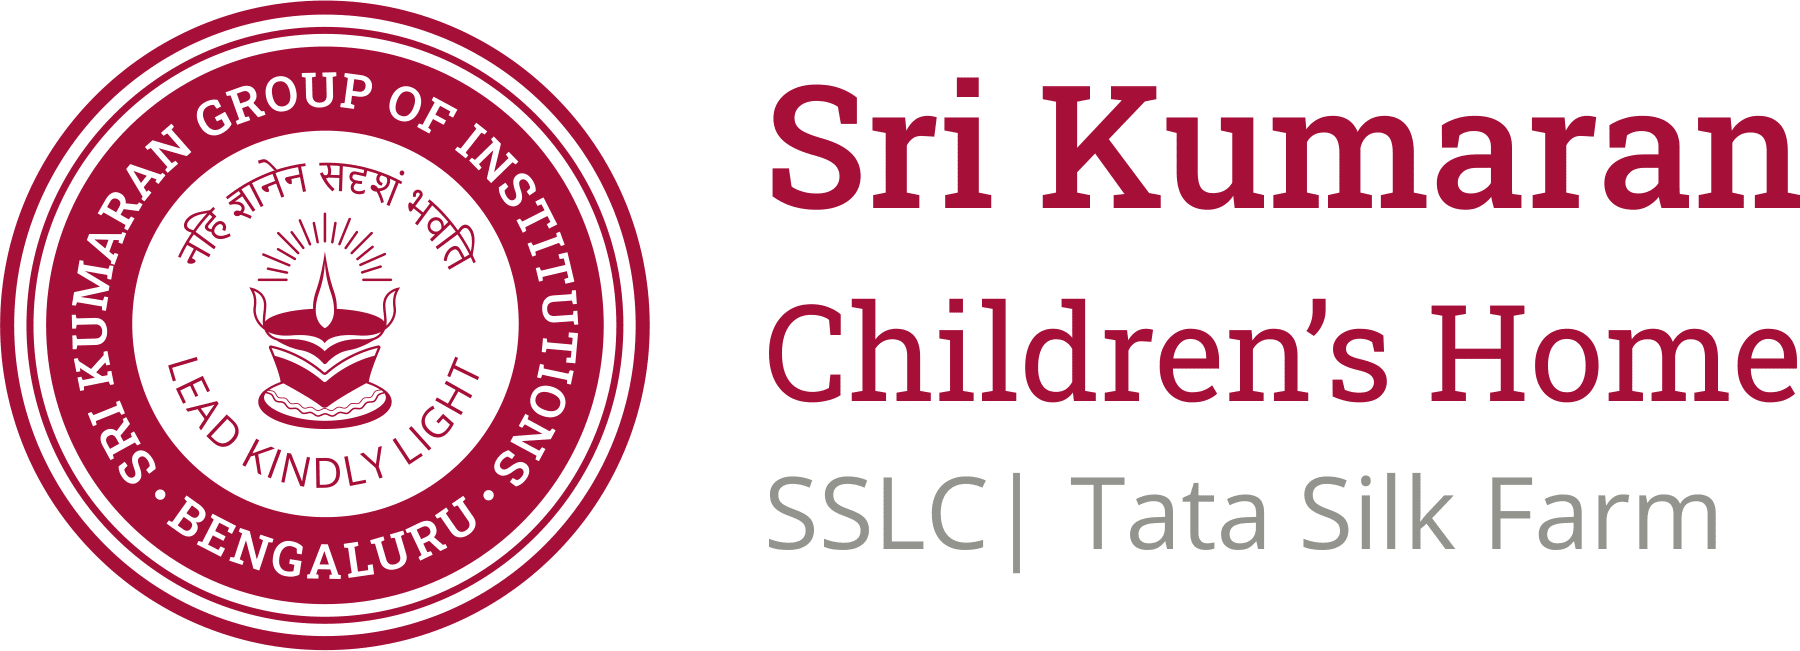 Sri Kumaran Childrens Home - SSLC | Tata Silk Farm